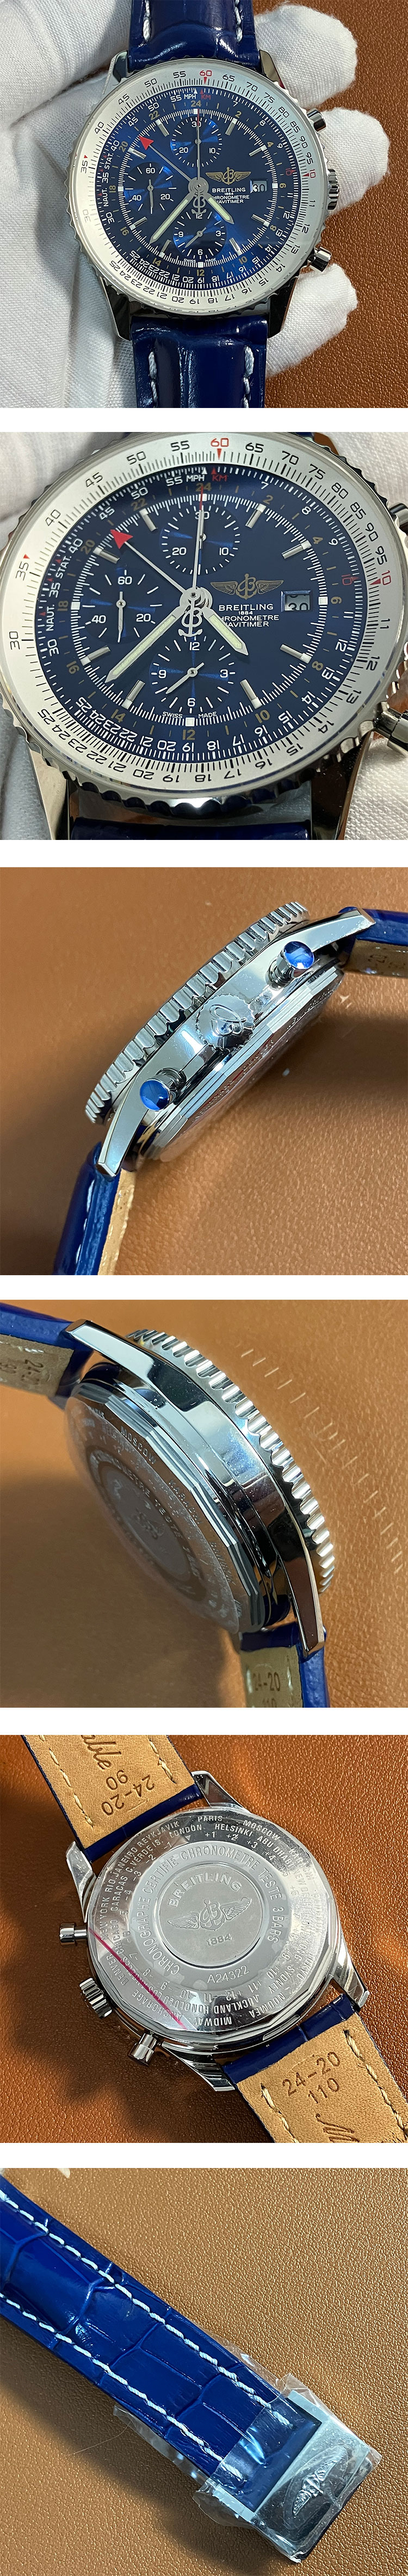 ブライトリングブランドのコピー時計 ナビタイマー GMT ブルー 46mm A24322121C1P1